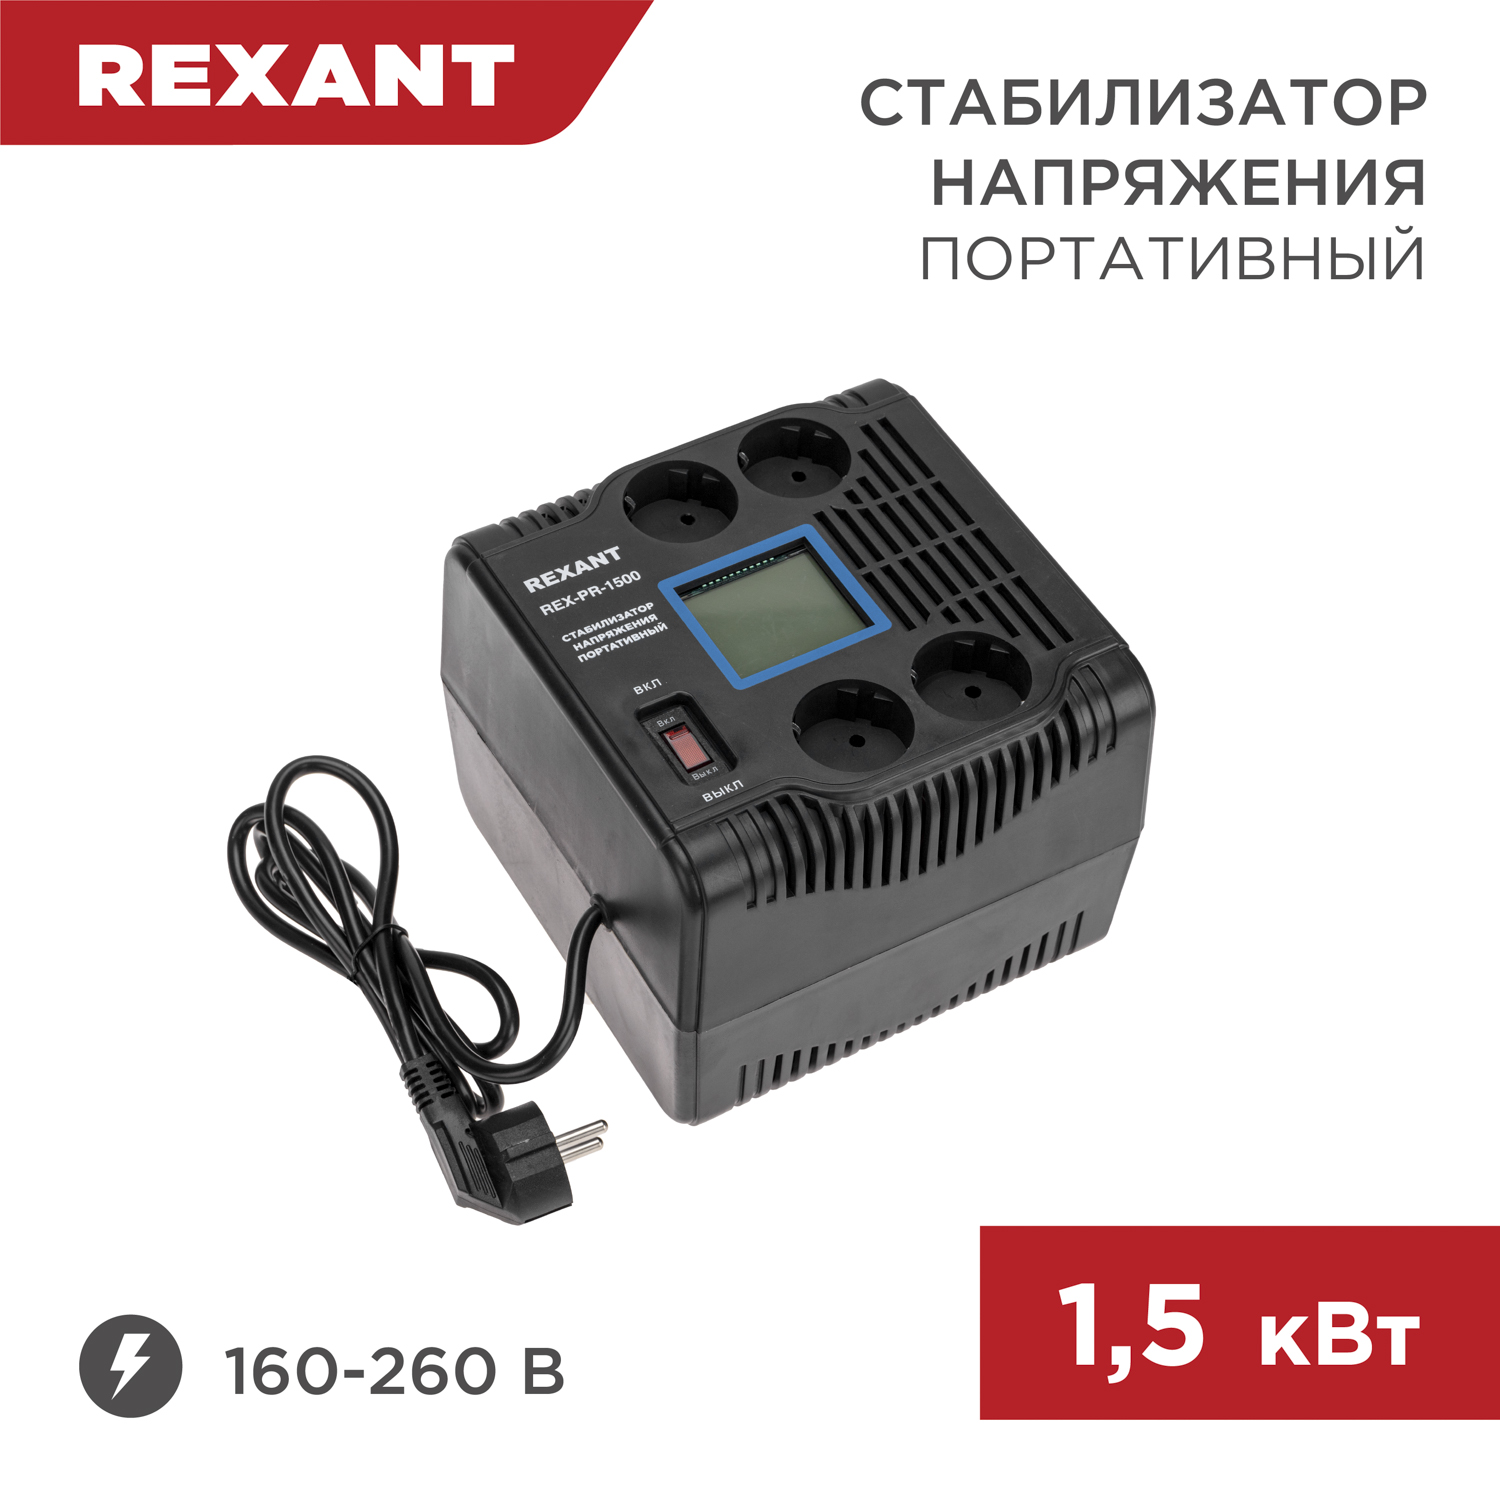 Стабилизатор напряжения портативный REXANT REX-PR-1500 11-5031